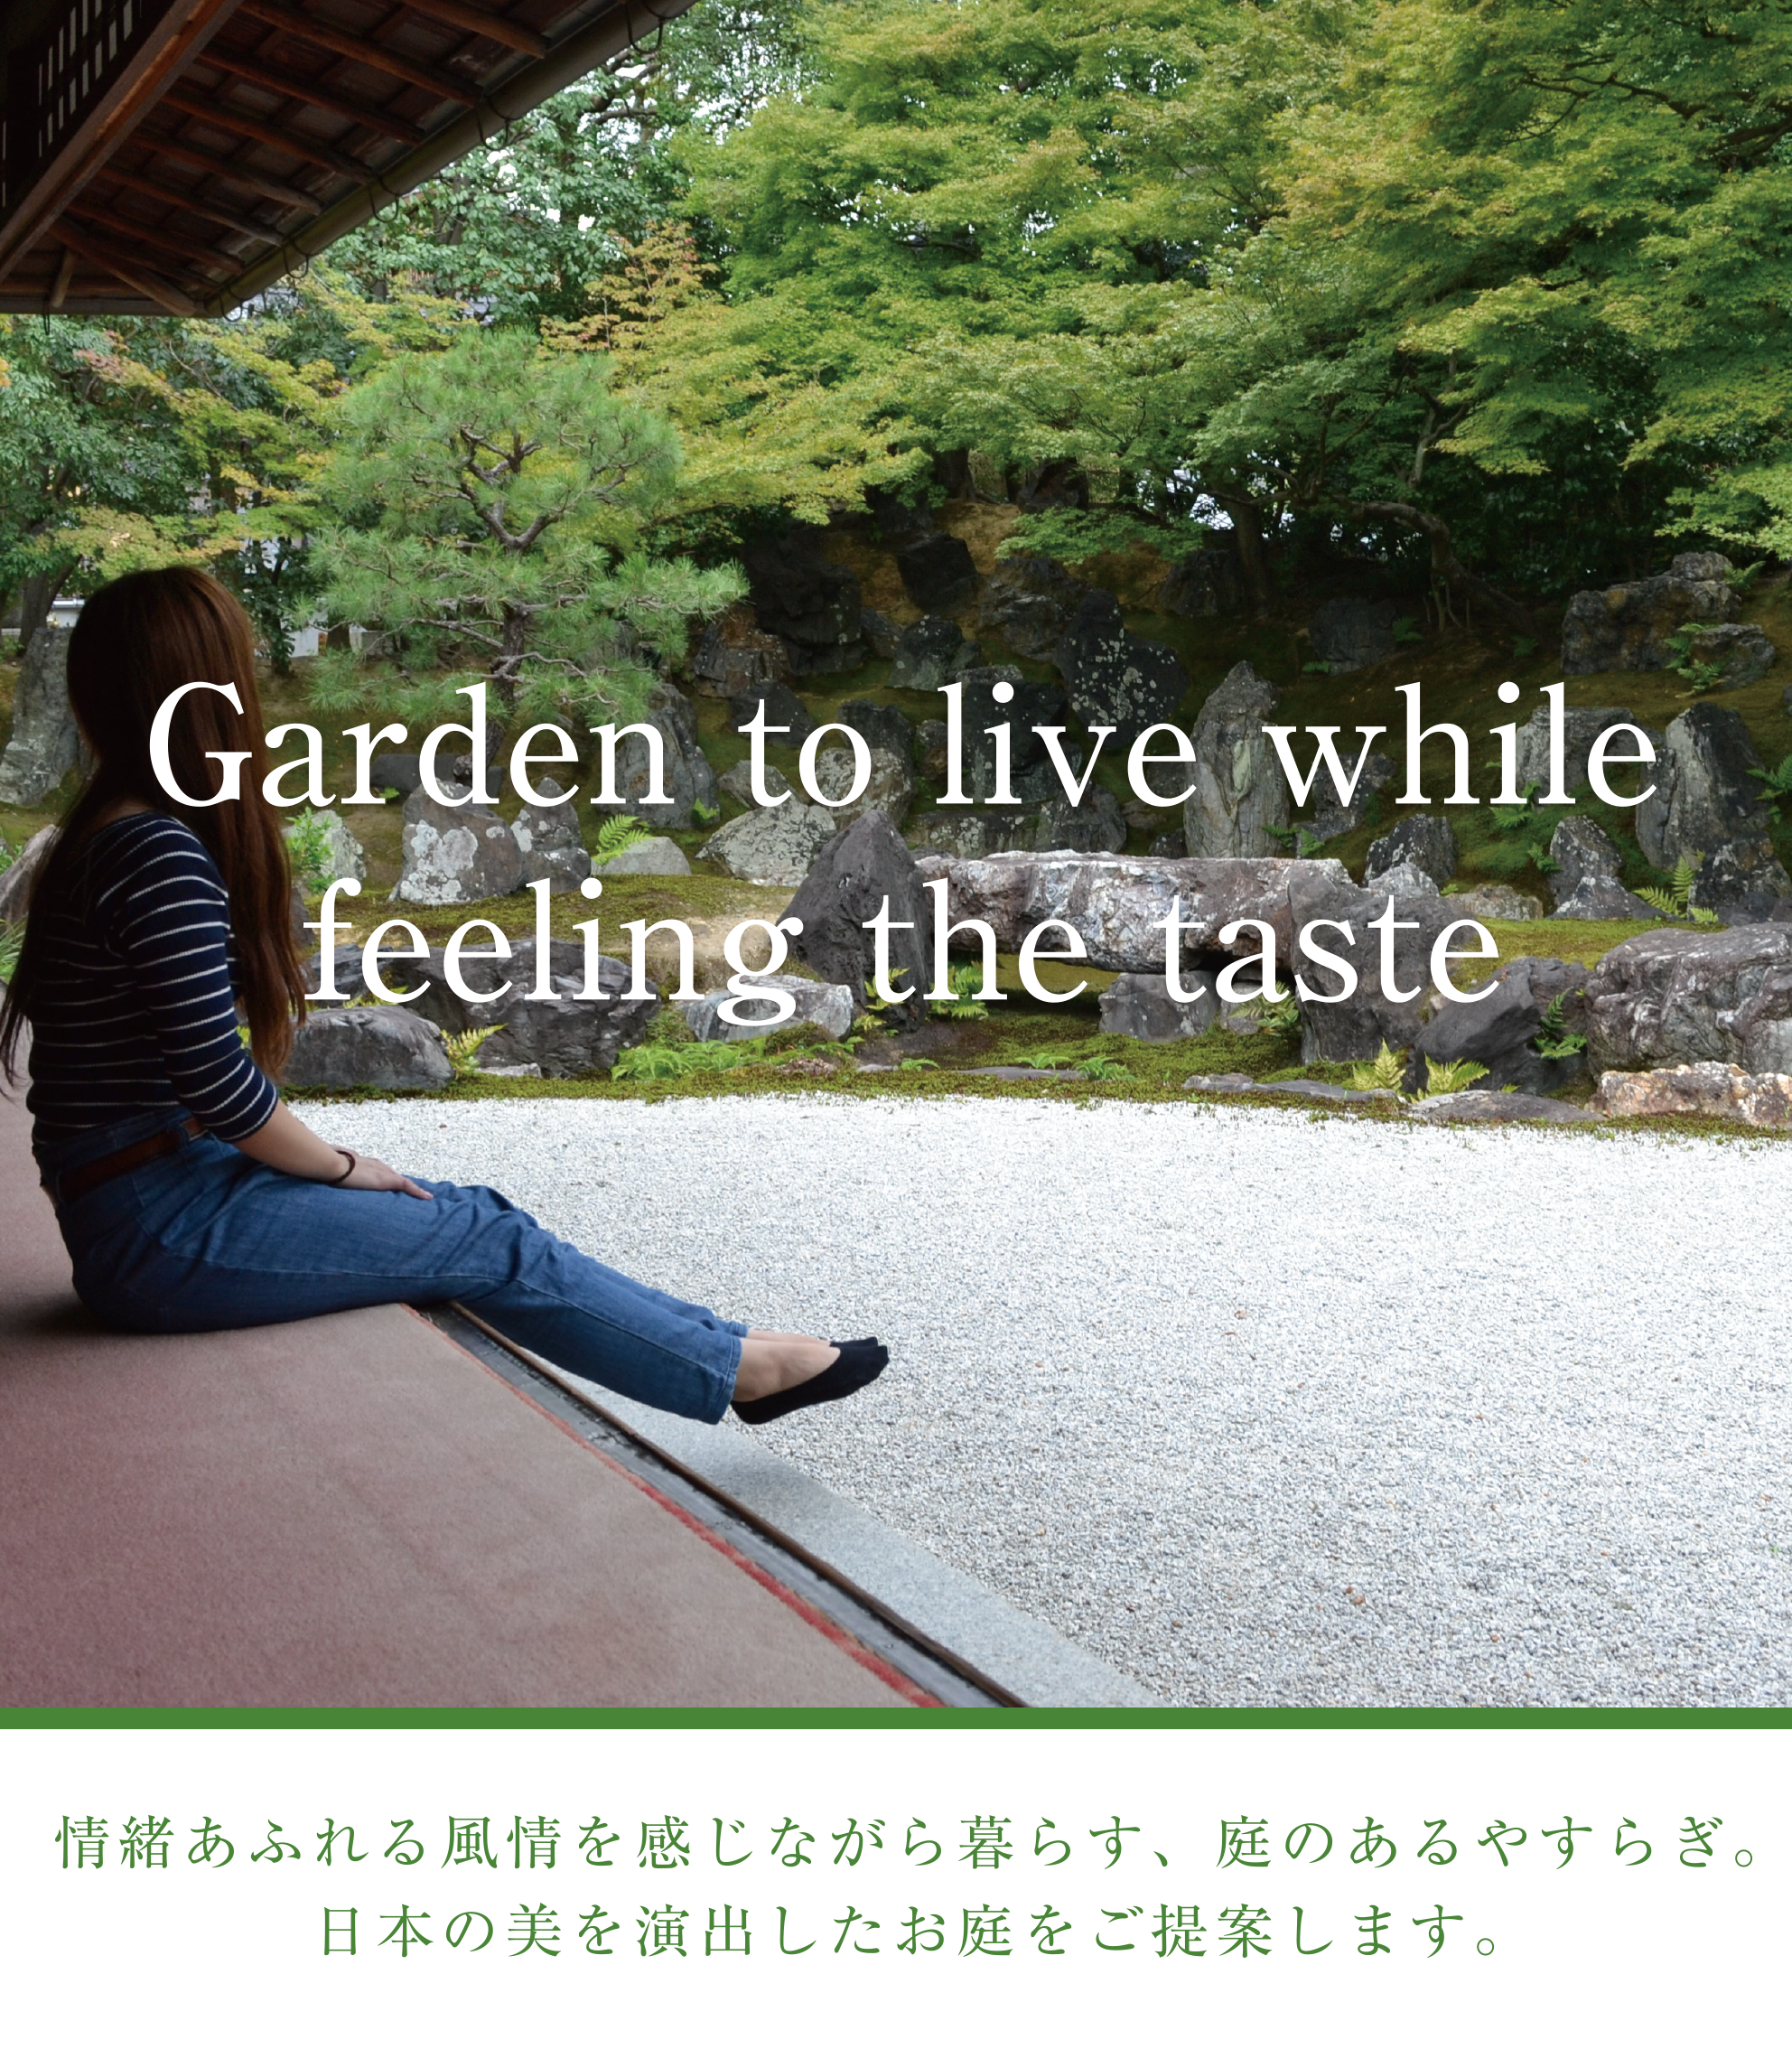 情緒あふれる風情を感じながら暮らす、庭のあるやすらぎ。日本伸びを演出したお庭をご提案します。